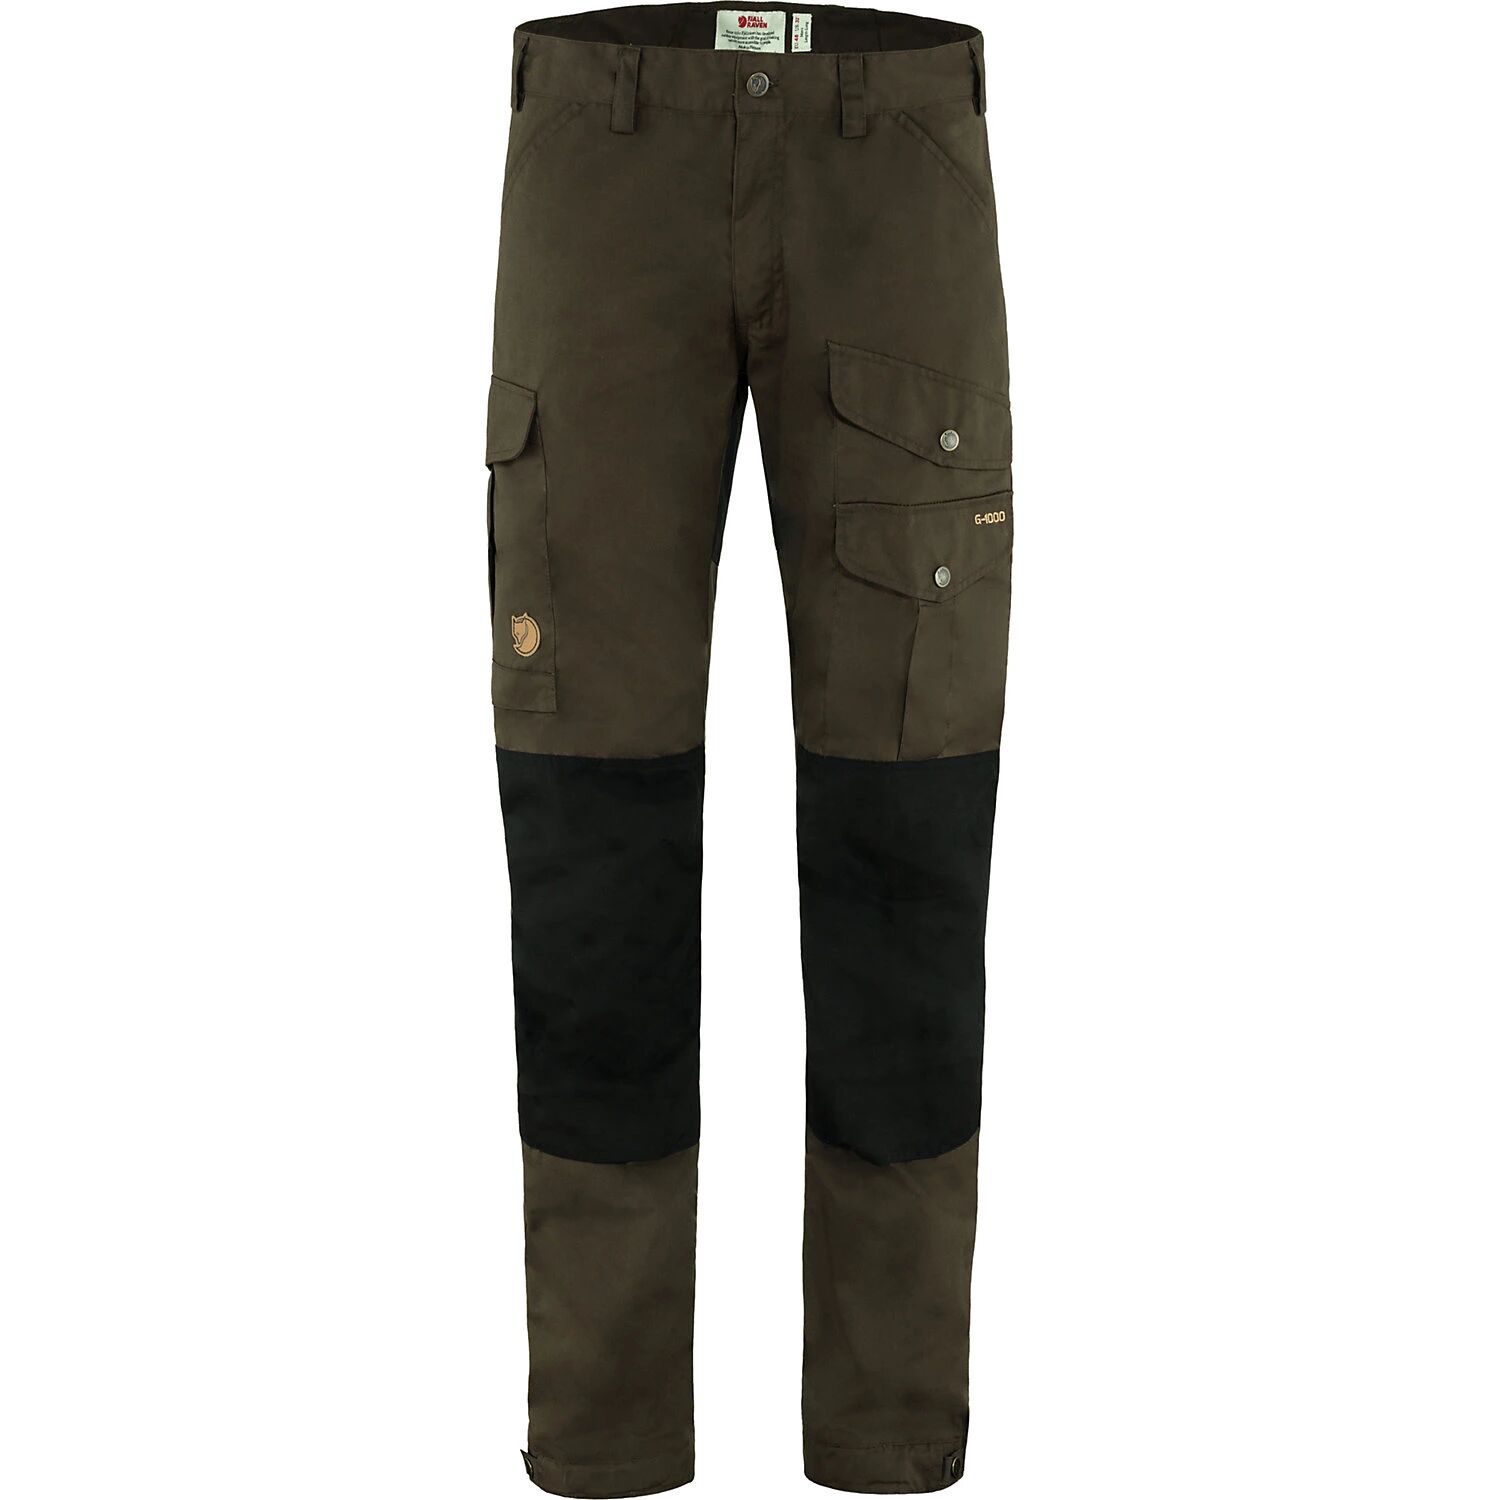 Fjallraven Men's Vidda Pro Trouser, Size 37, Brown